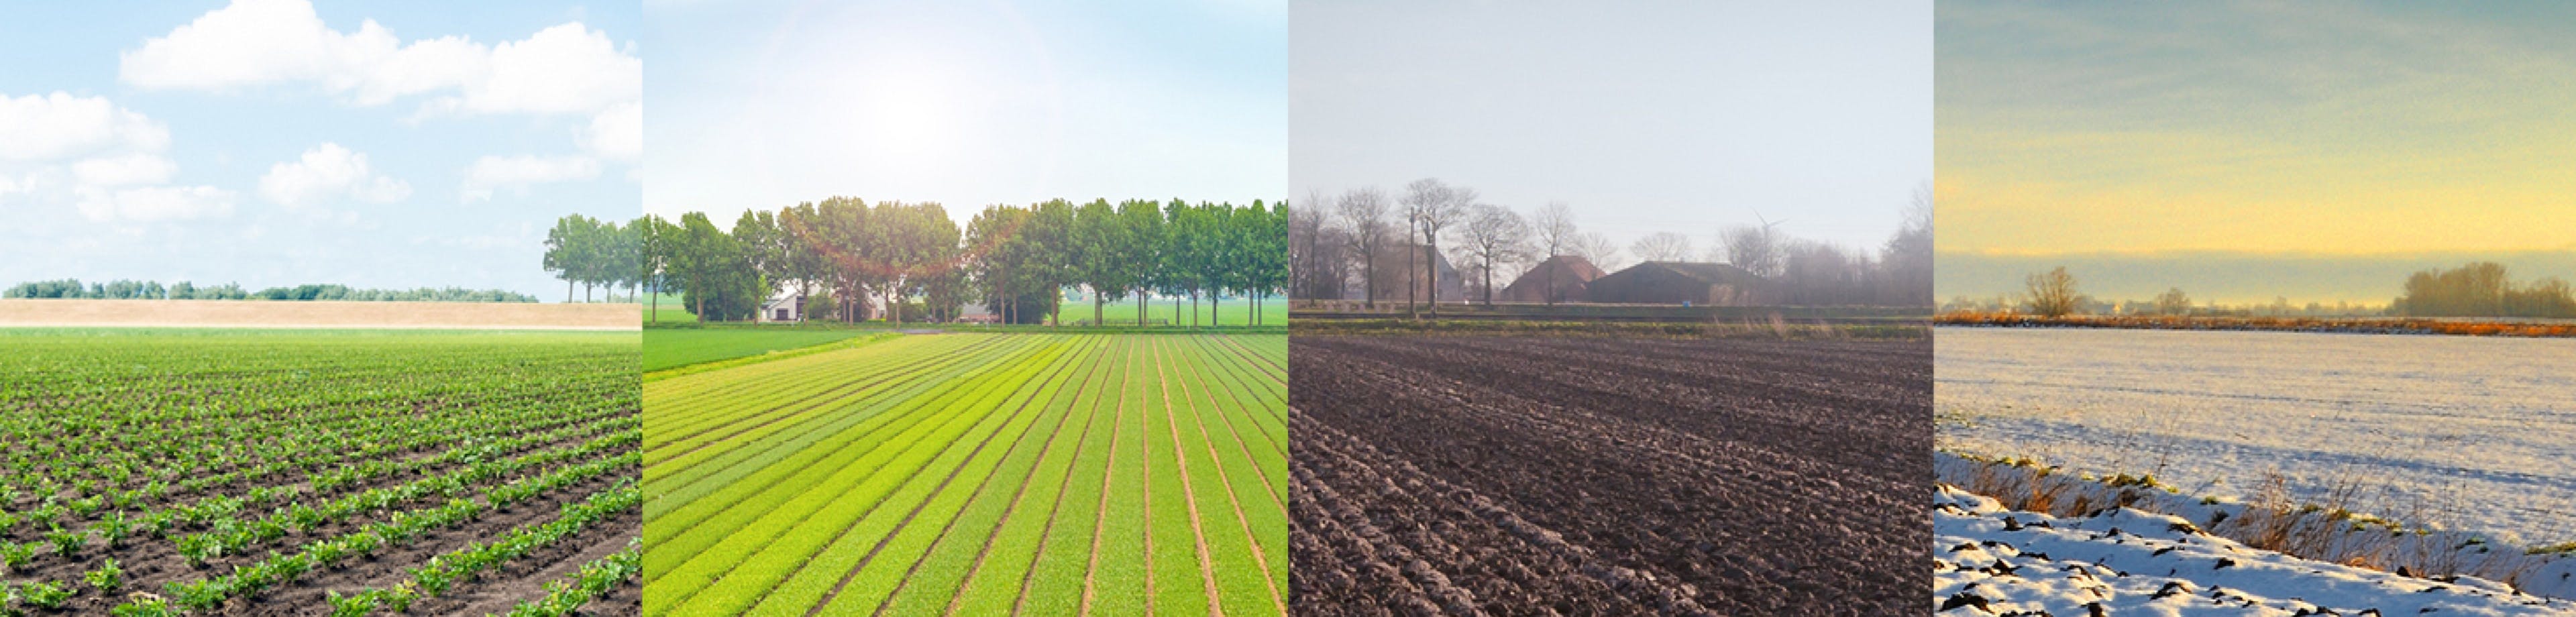 De 4 seizoenen op een rij in de agrarische sector